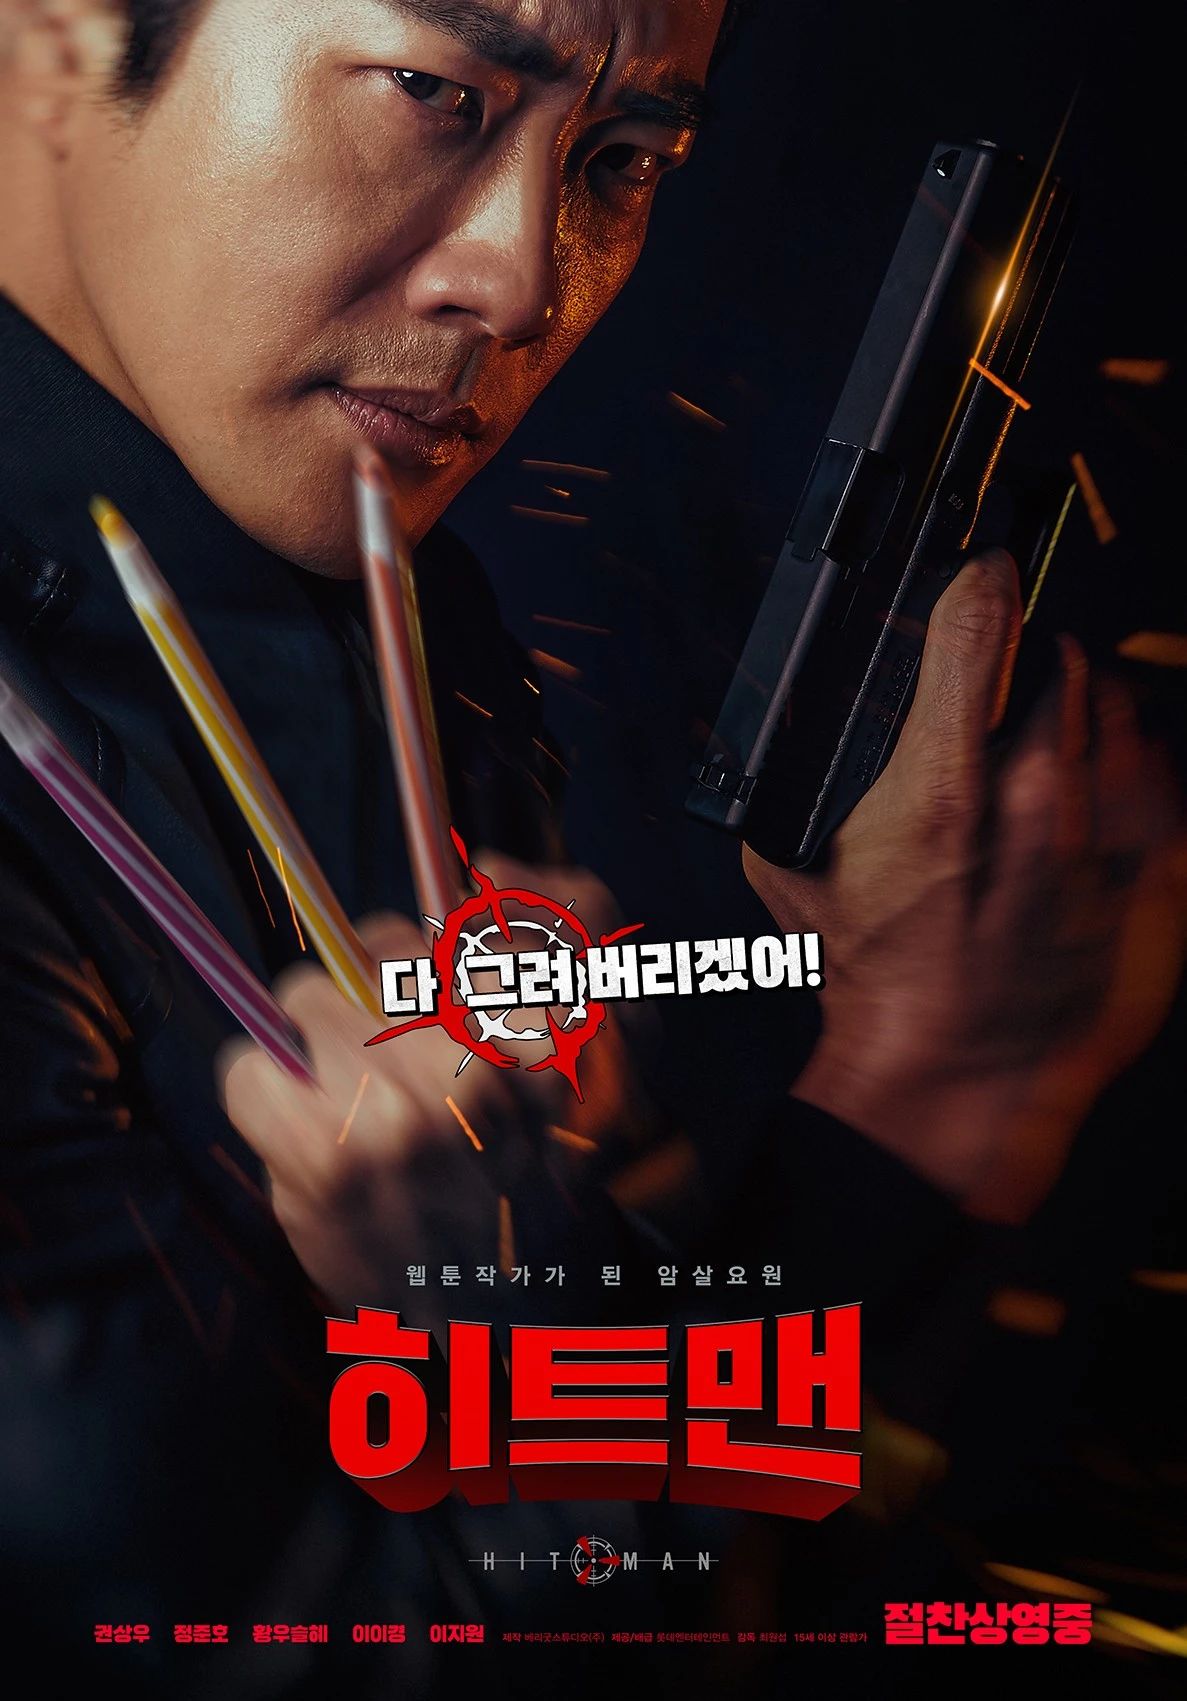 《漫画威龙之大话特务》是一部2020上映的韩国动作喜剧电影,由崔元燮